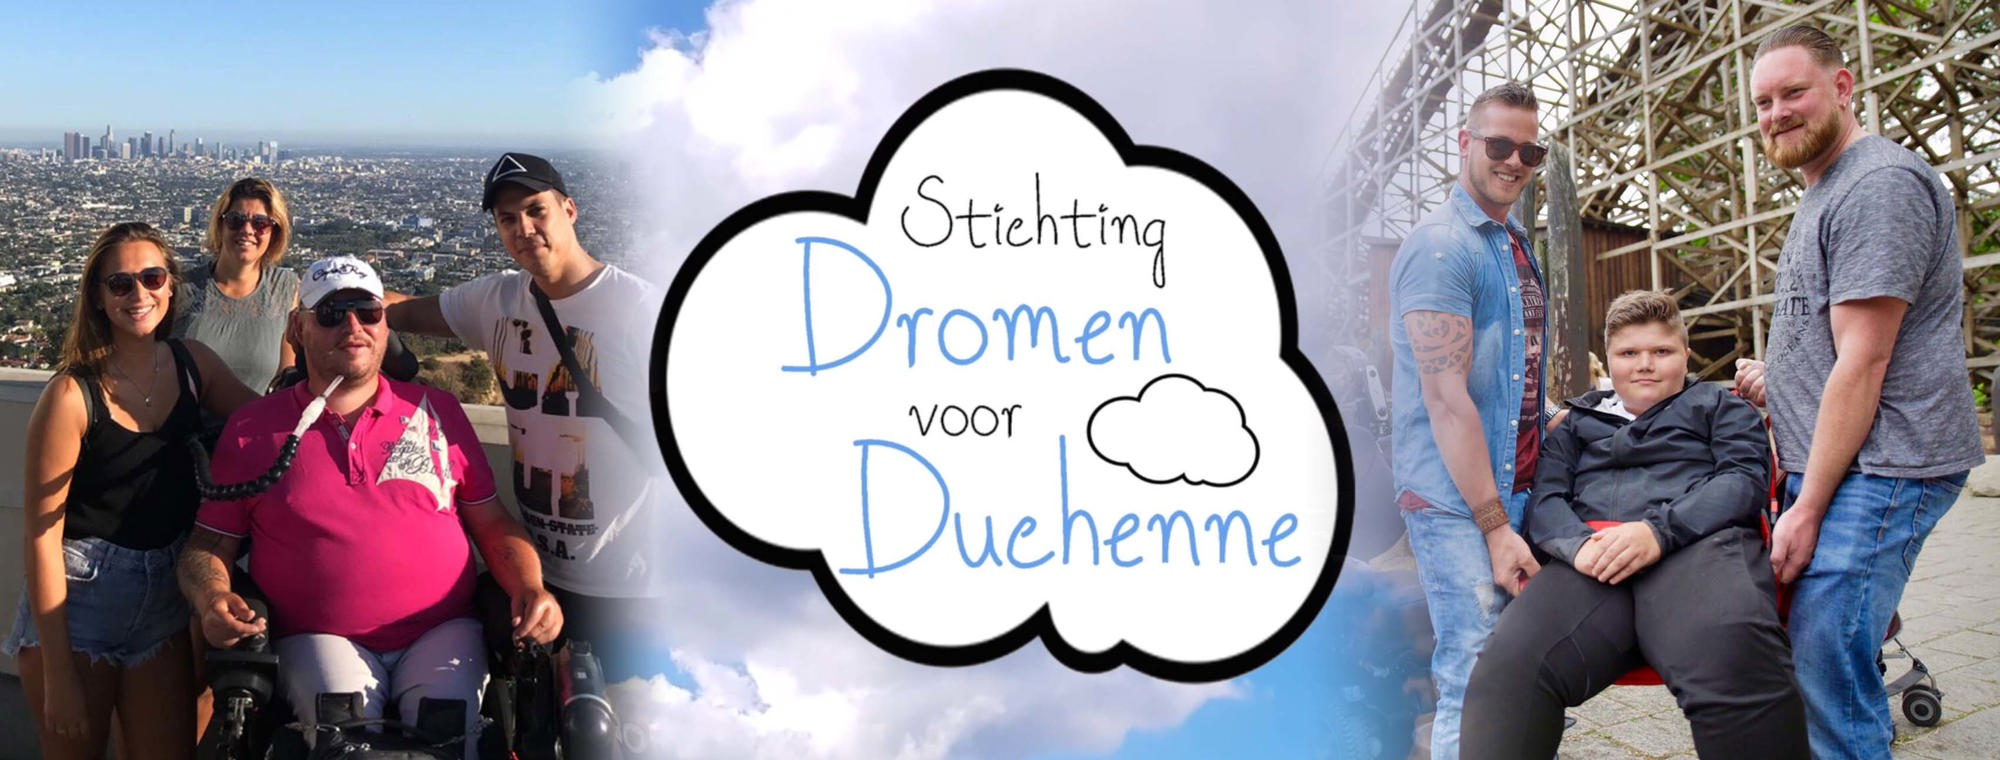 Stichting Dromen voor Duchenne-photo